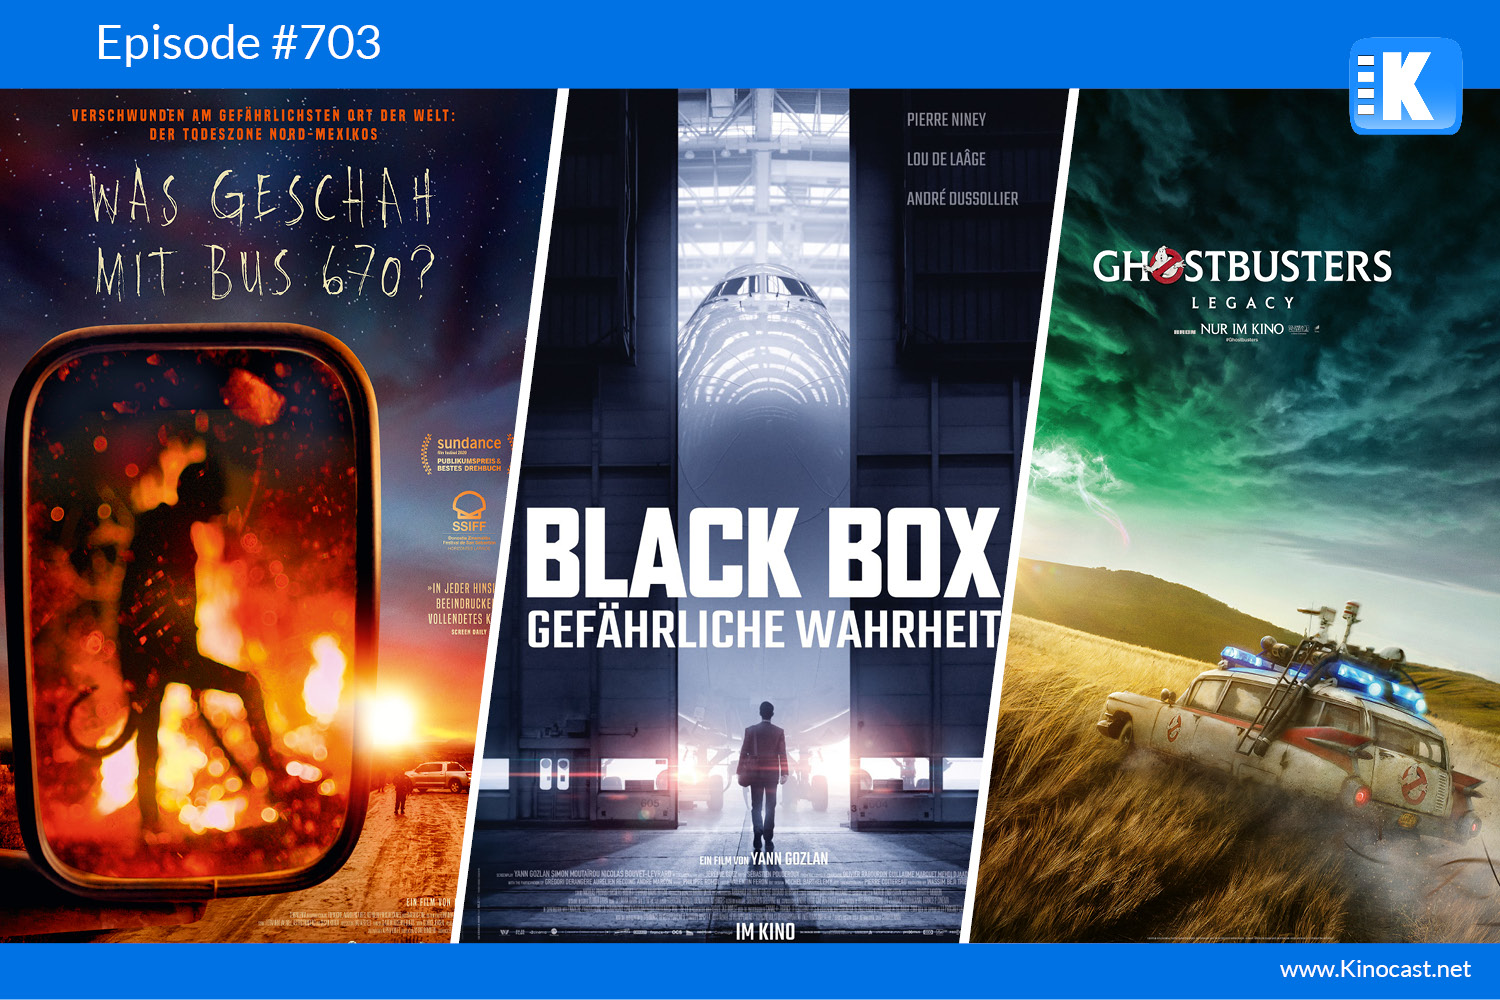 Was geschah mit Bus Black Box Gefaehrliche Wahrheit Ghostbusters Legacy Film Podcast Deutsch Download Stream